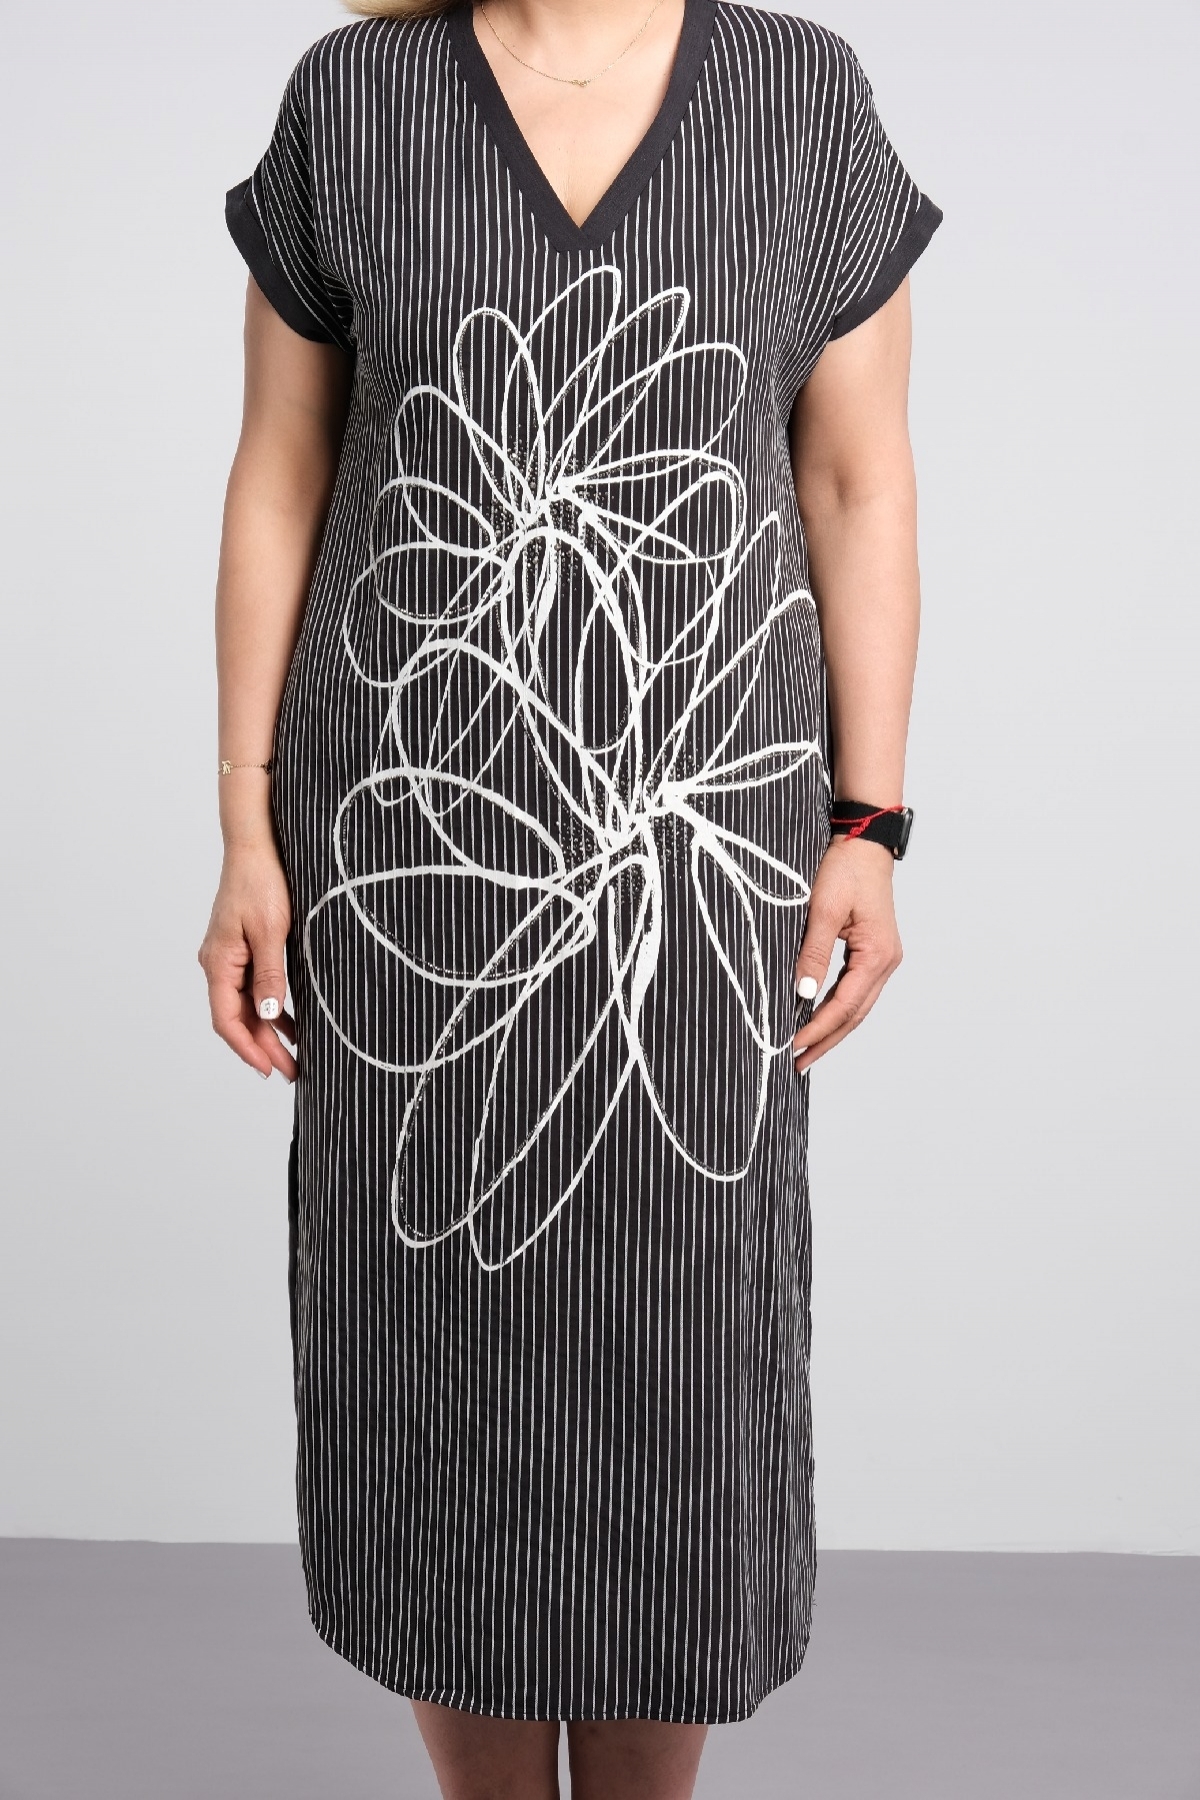 v yaka kısa kollu midi boy dijital baskı çiçek görselli şık büyük beden elbise 